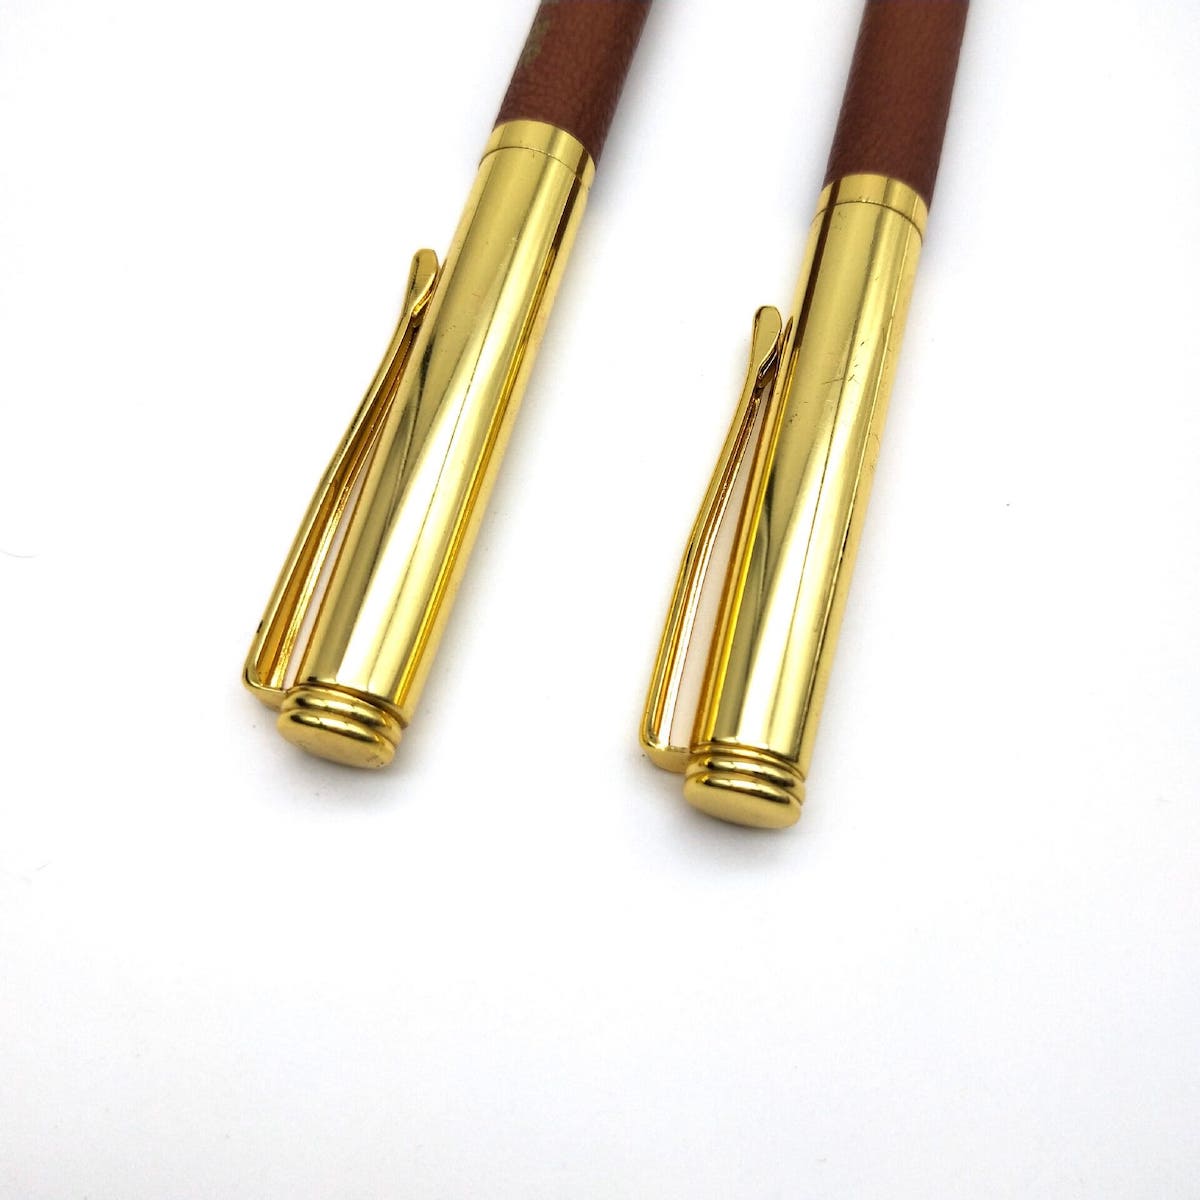 革製の高級金色のボールペン